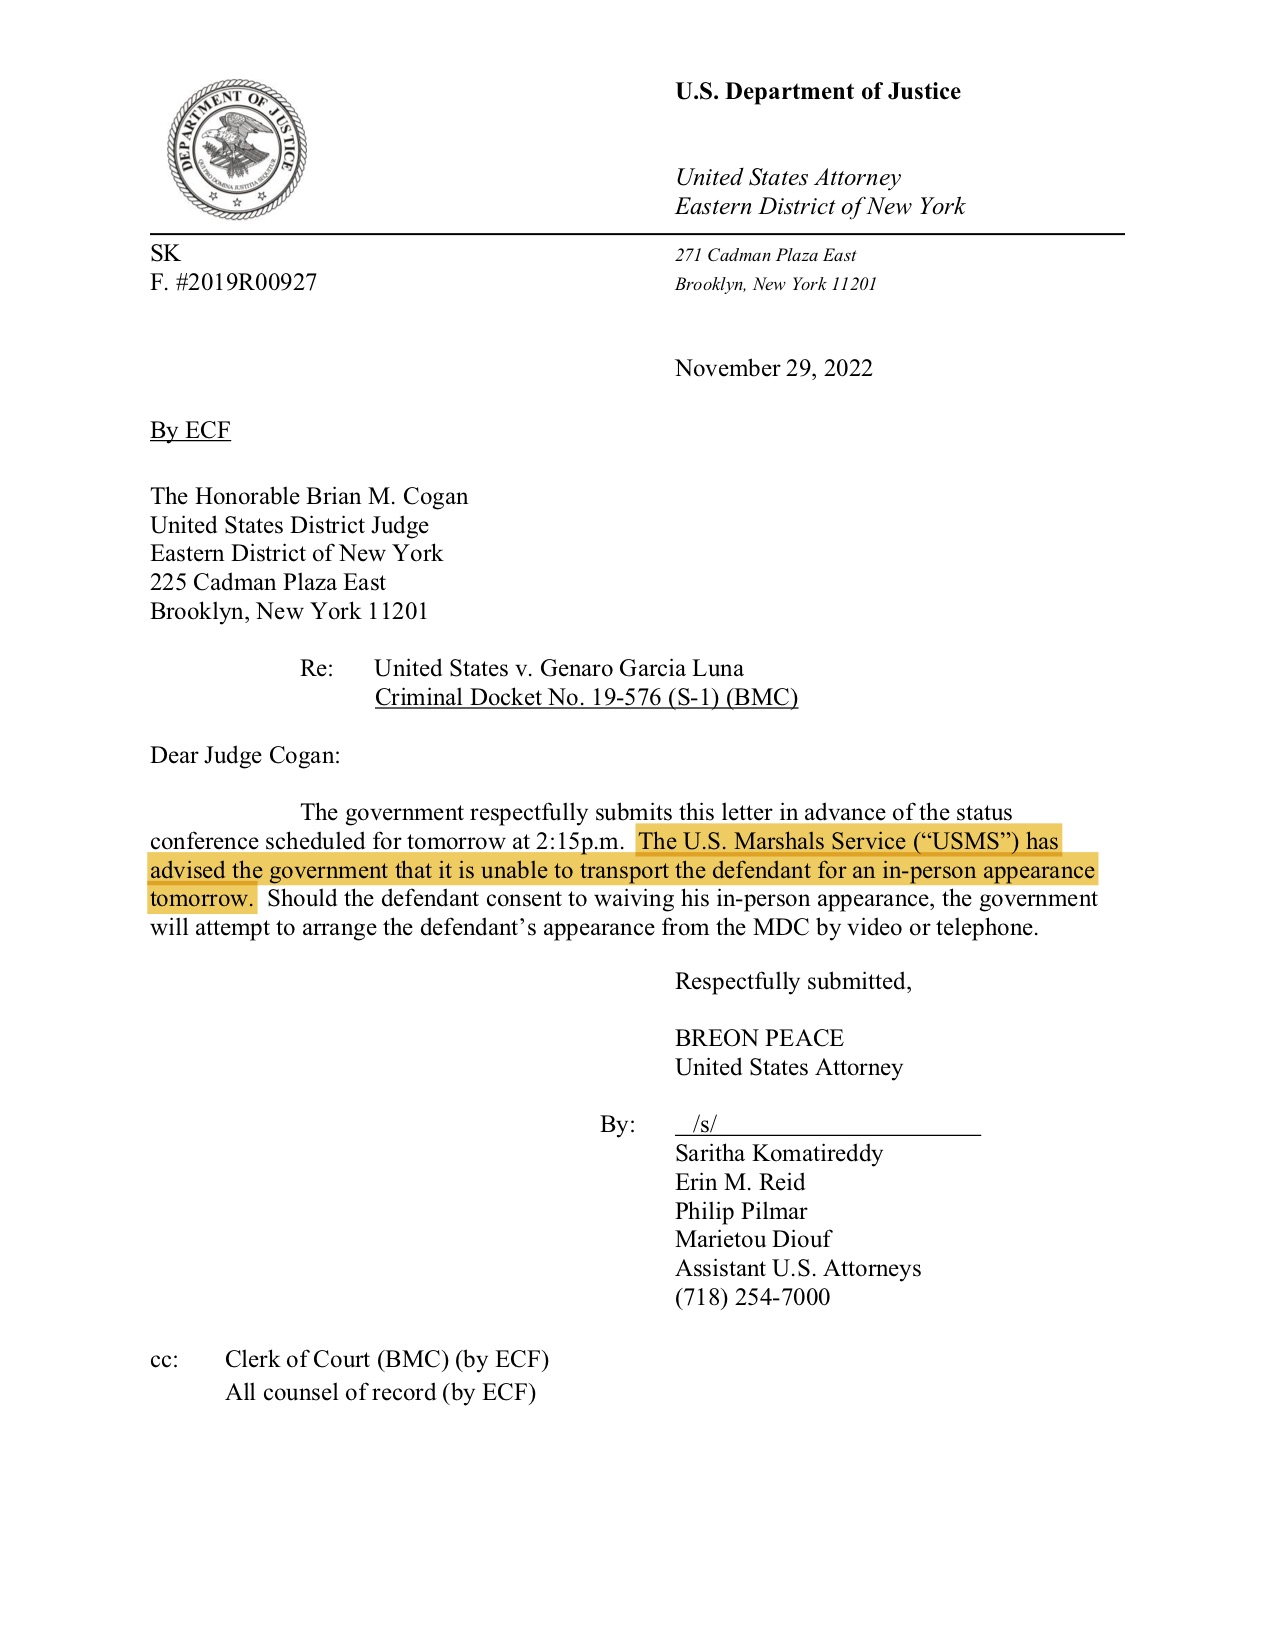 Un documento dirigido al juez Brian Cogan, con fecha del 29 de noviembre, informaba que García Luna no podía ser transportado a una audiencia en persona
(Foto: Twitter/@keegan_hamilton)